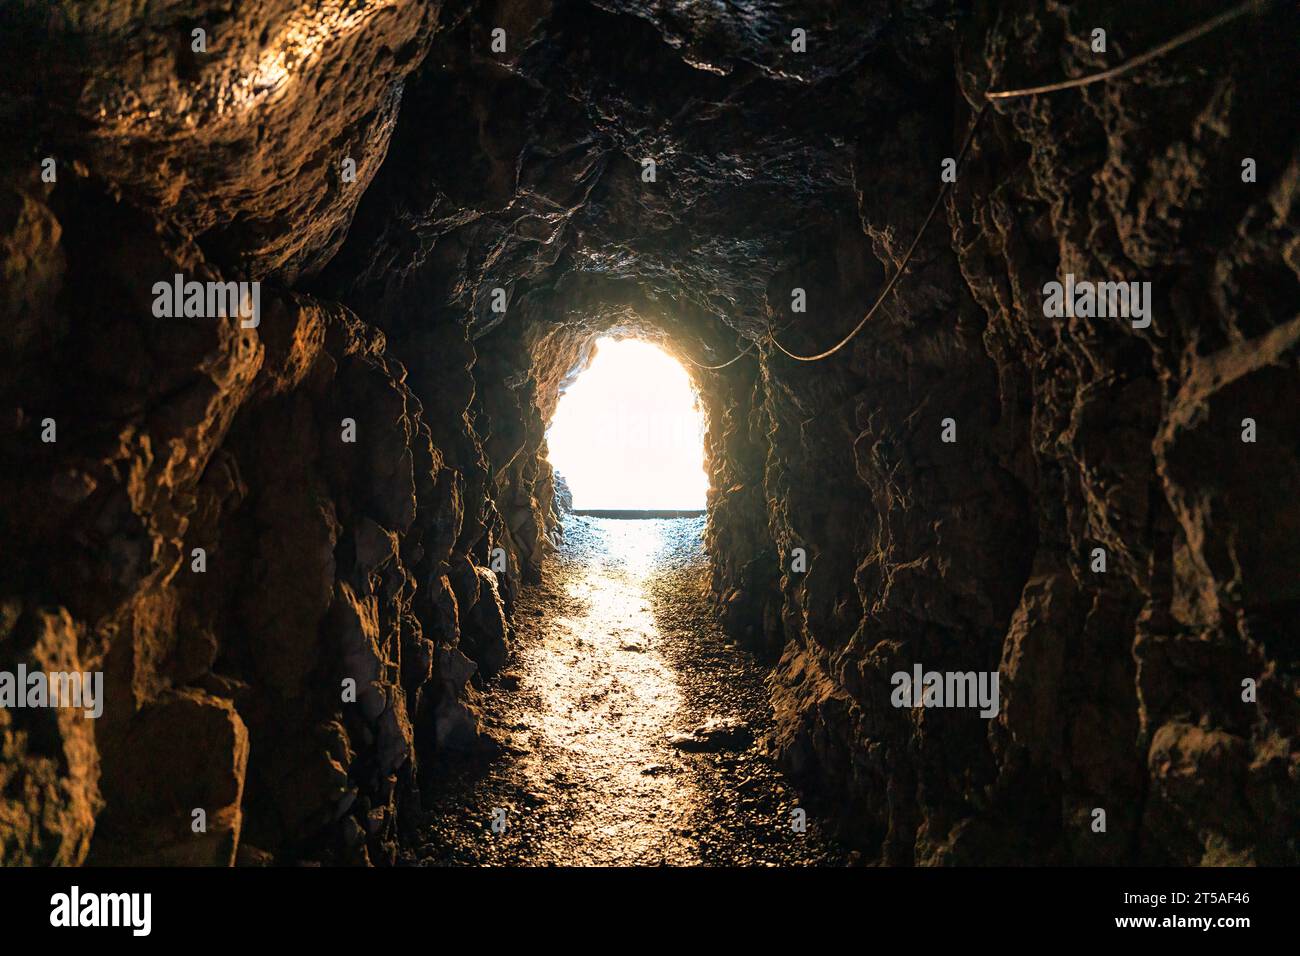 Natürlicher Höhlenbergbau unterirdischer Tunnelfelsen und goldenes Licht am Ziel. Glaubenskonzept über Religion und Gott Stockfoto